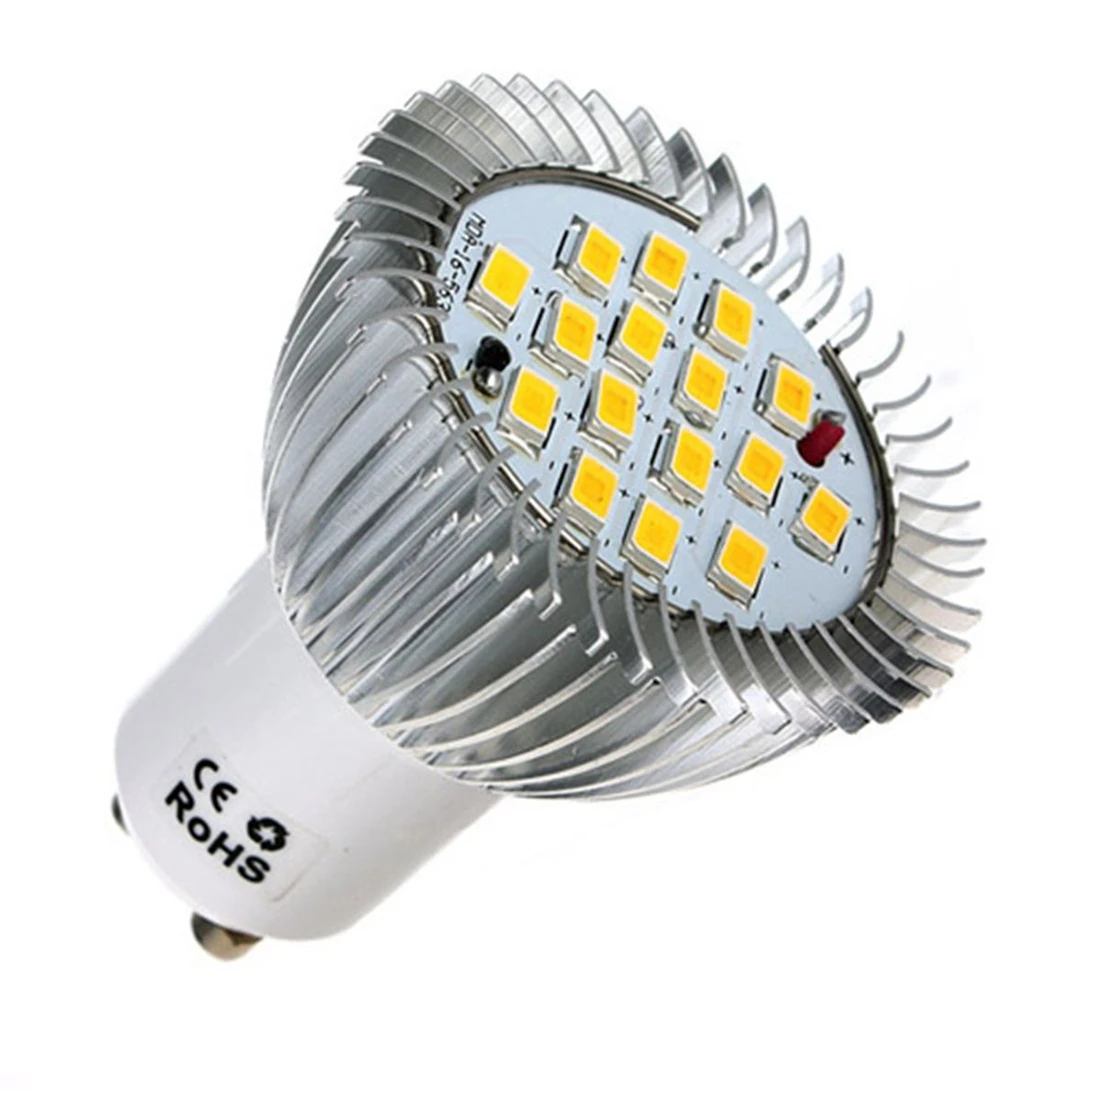 

GU10 16 LED 5630 SMD Energy Saving Lamp Bulb 7W LED Light Bulb Spotlight Spot Lights Bulbs White/Warm White Lighting AC 85-265V